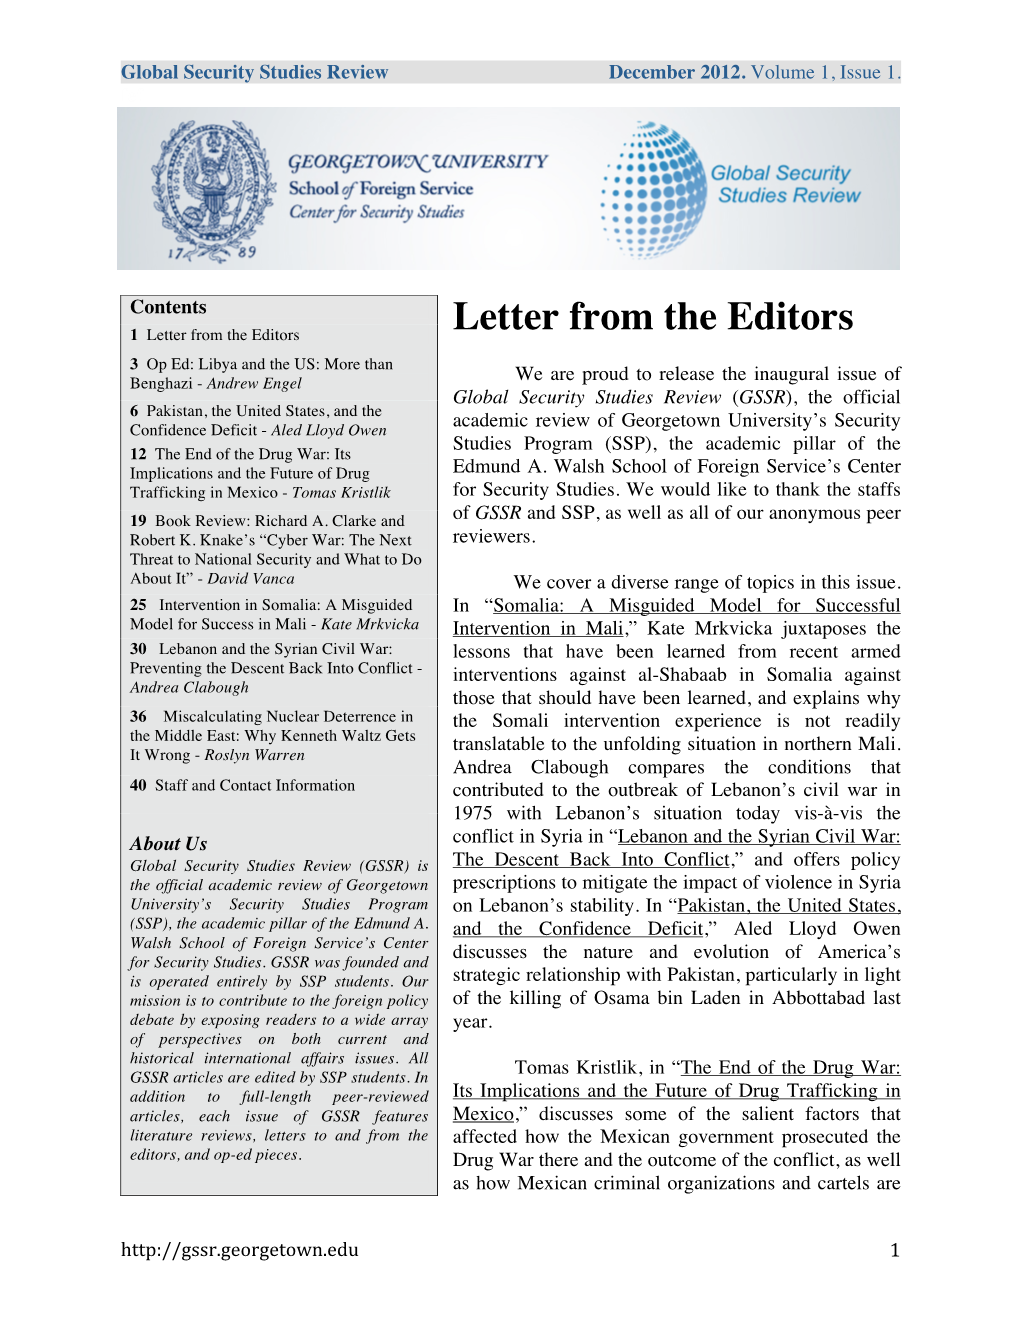 Letter from the Editors Letter from the Editors